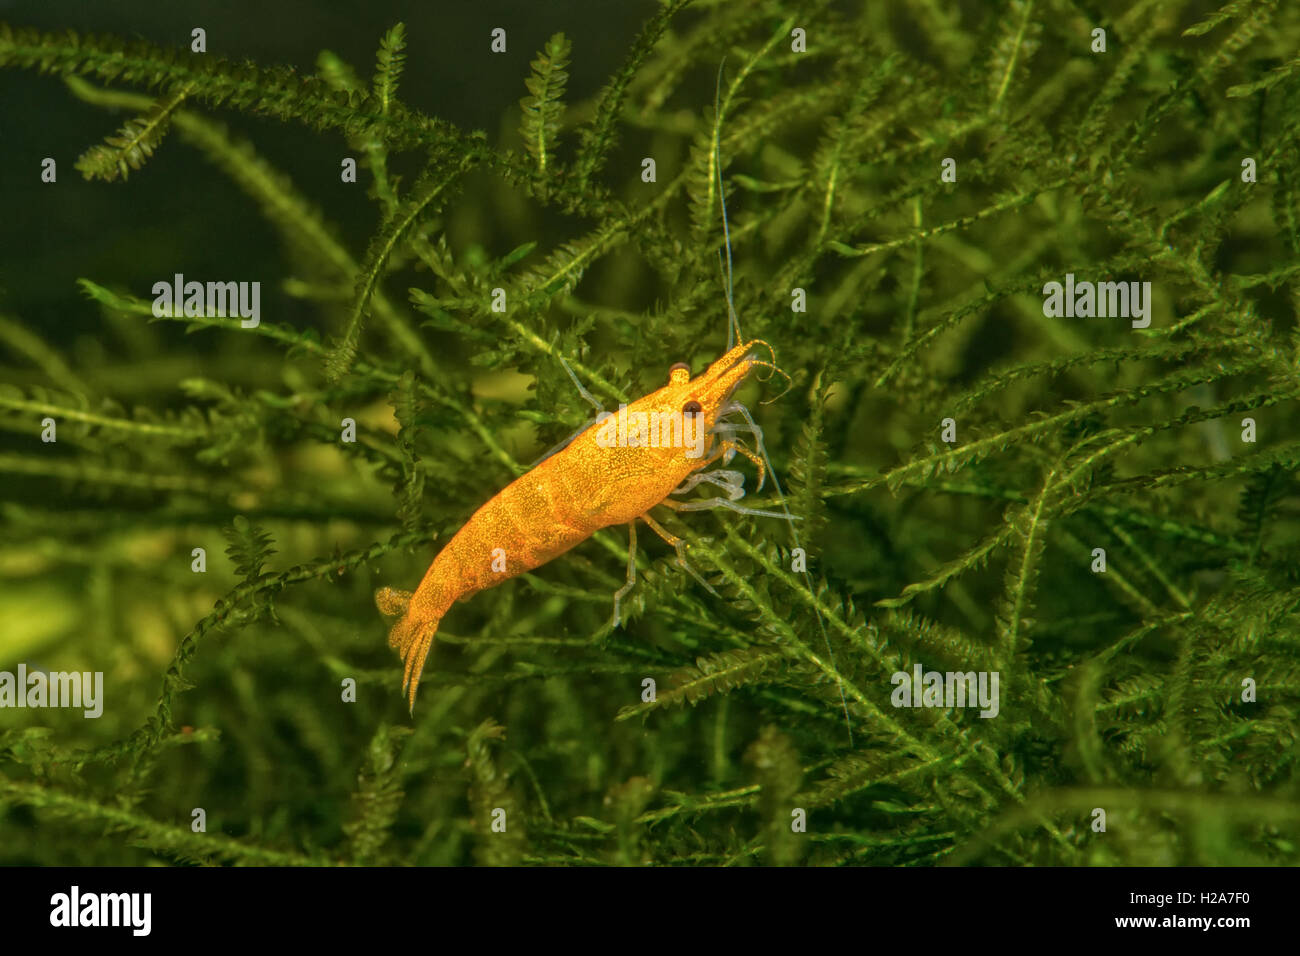 Orange freshwater shrimp closeup shot in aquarium (genus Neocaridina) Stock Photo